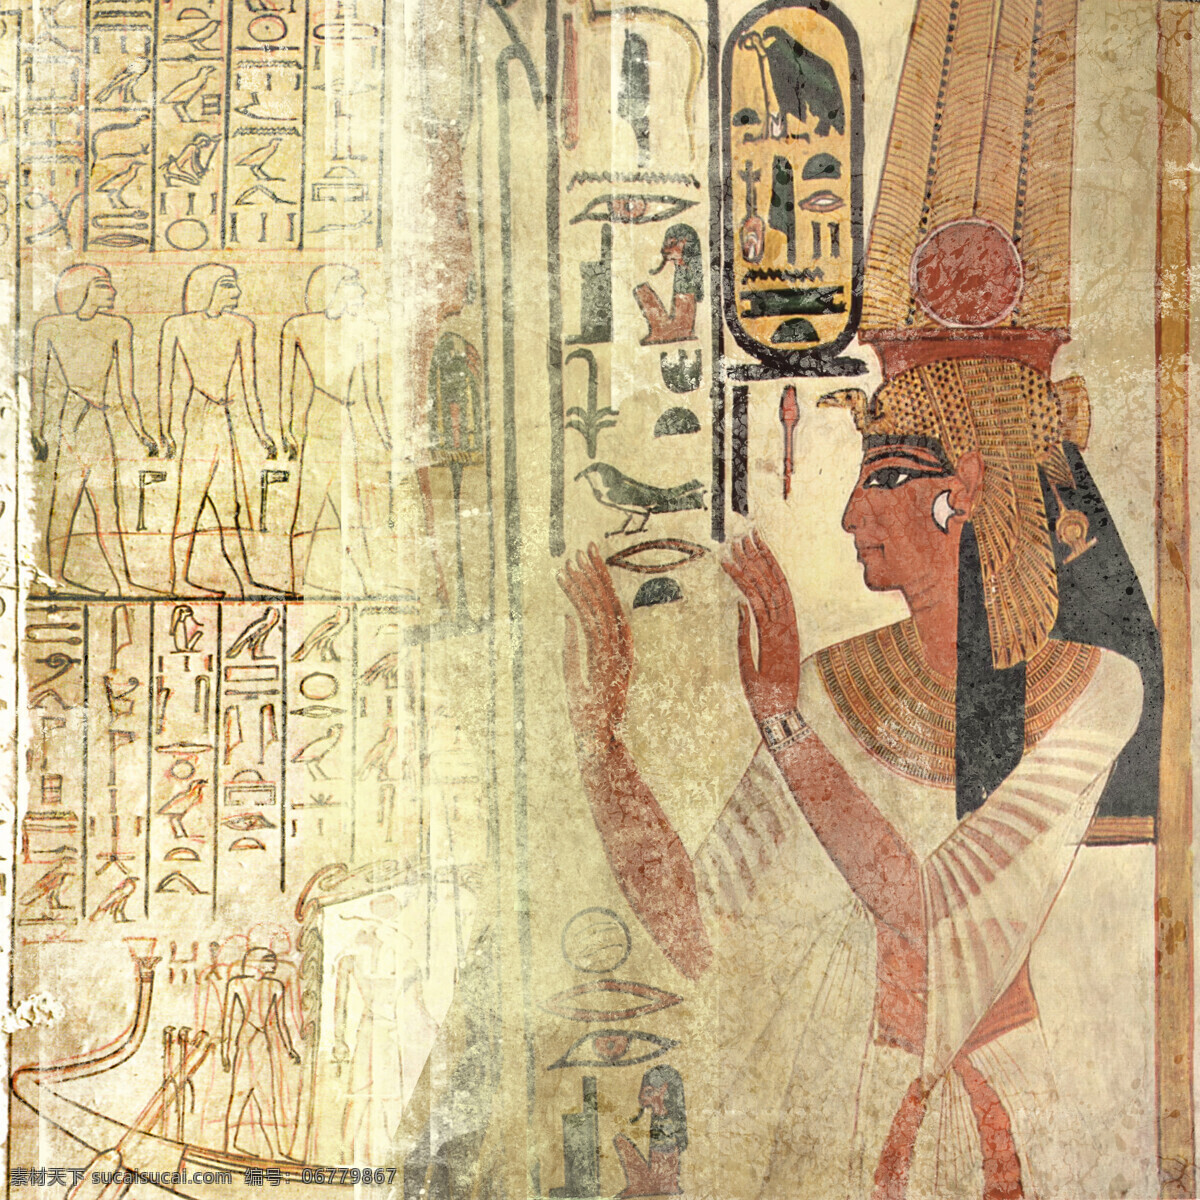 埃及 王后 埃及王后 埃及女人 埃及传统图案 埃及图腾 埃及壁画 古埃及文化 传统图案 文化艺术